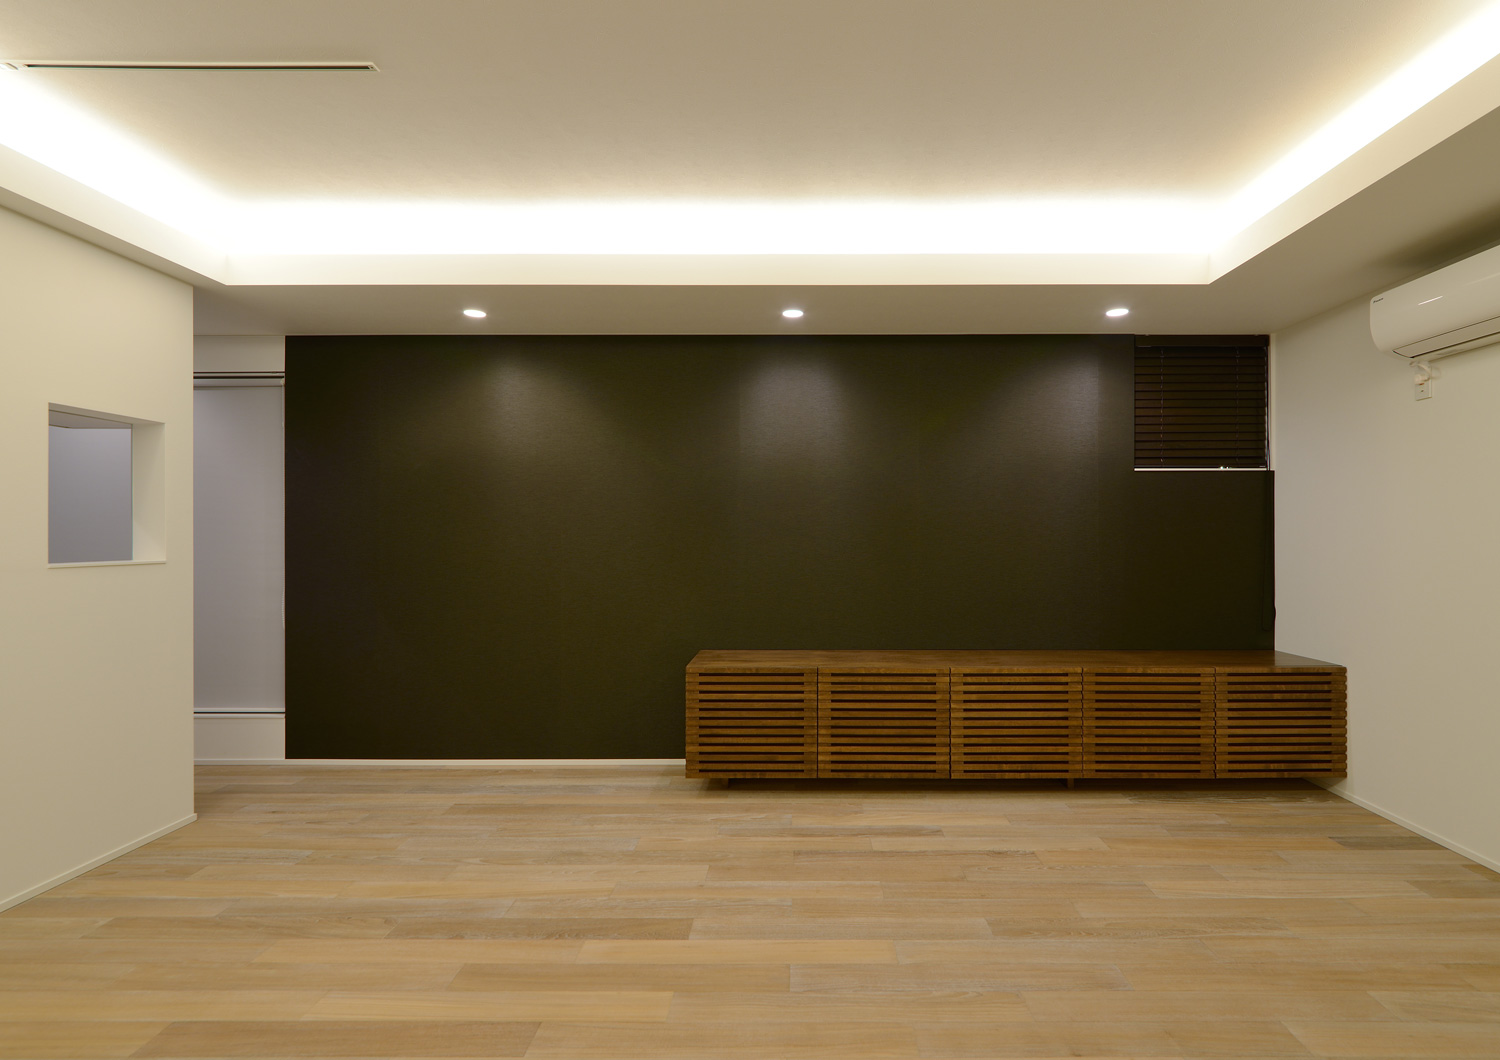 天井の間接照明と、黒い壁の上に取り付けられたダウンライトに照らされるLDK・デザイン住宅